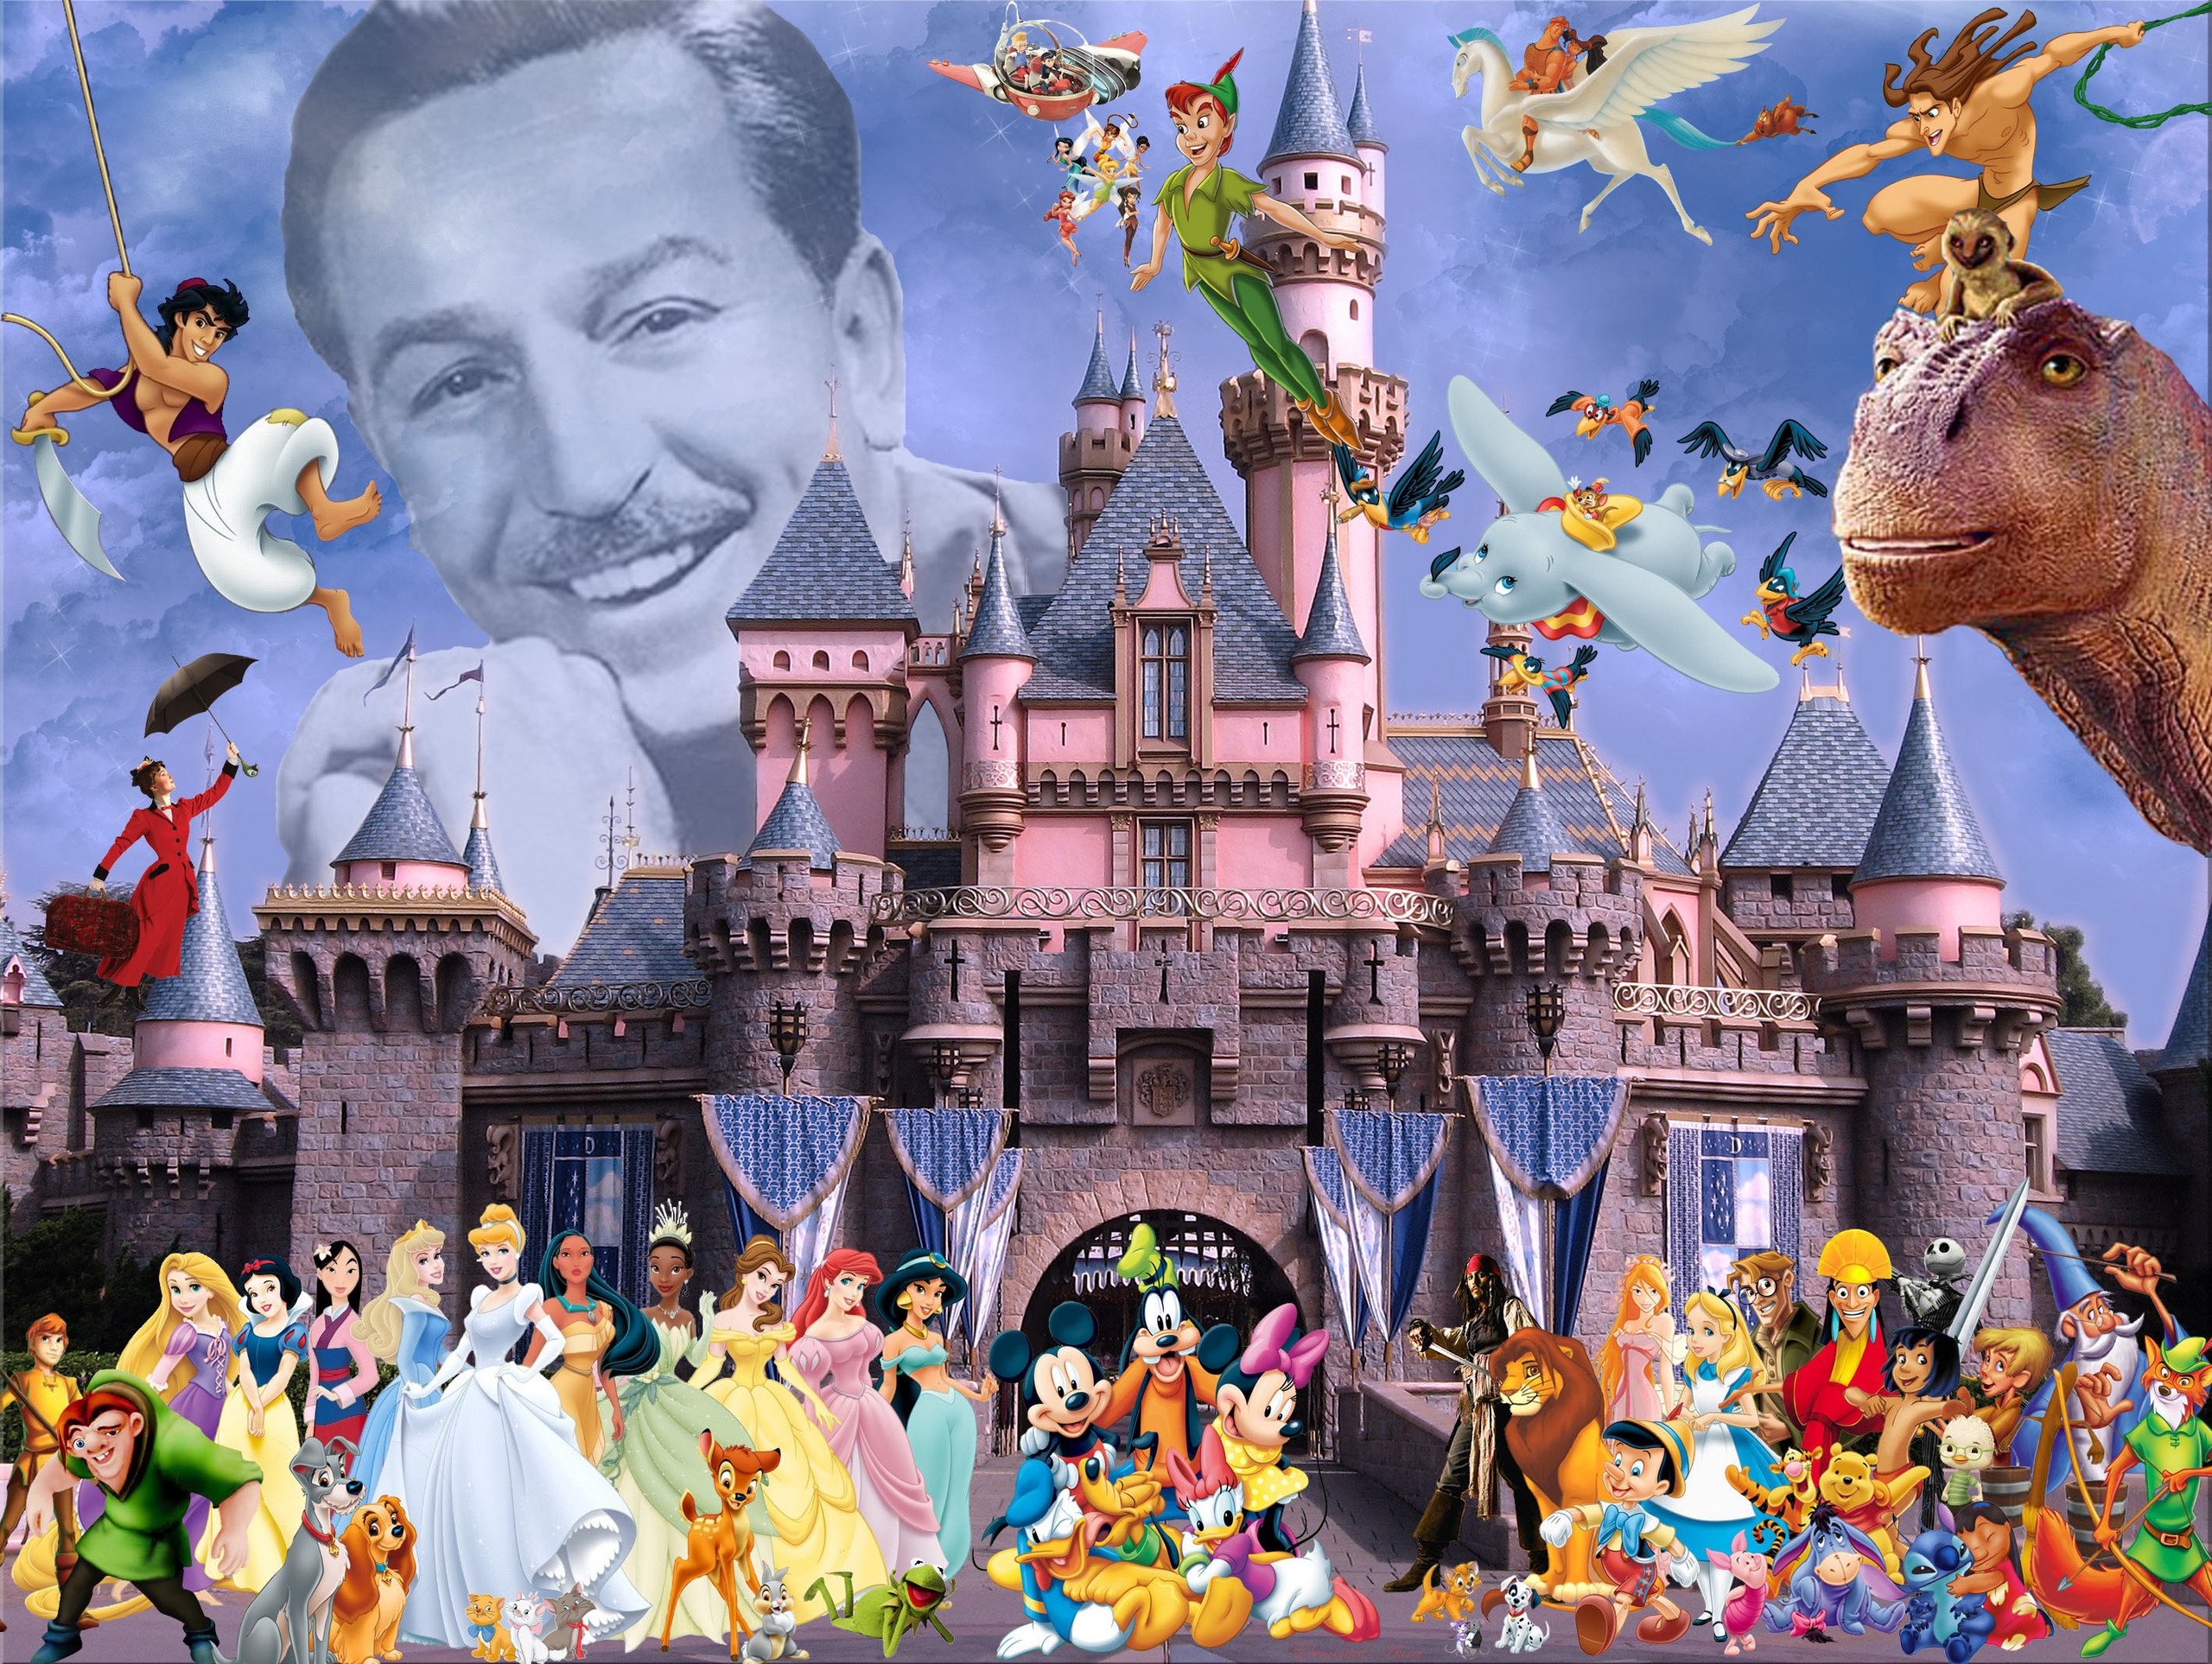 Уолт дисней фэнтези. Уолт Дисней коллаж. Волшебный. Мир. Диснея. Уолт. Дисней. Мир Уолта Диснея» (Walt Disney World) во Флориде. Уолт Дисней Пикчерз и герои.